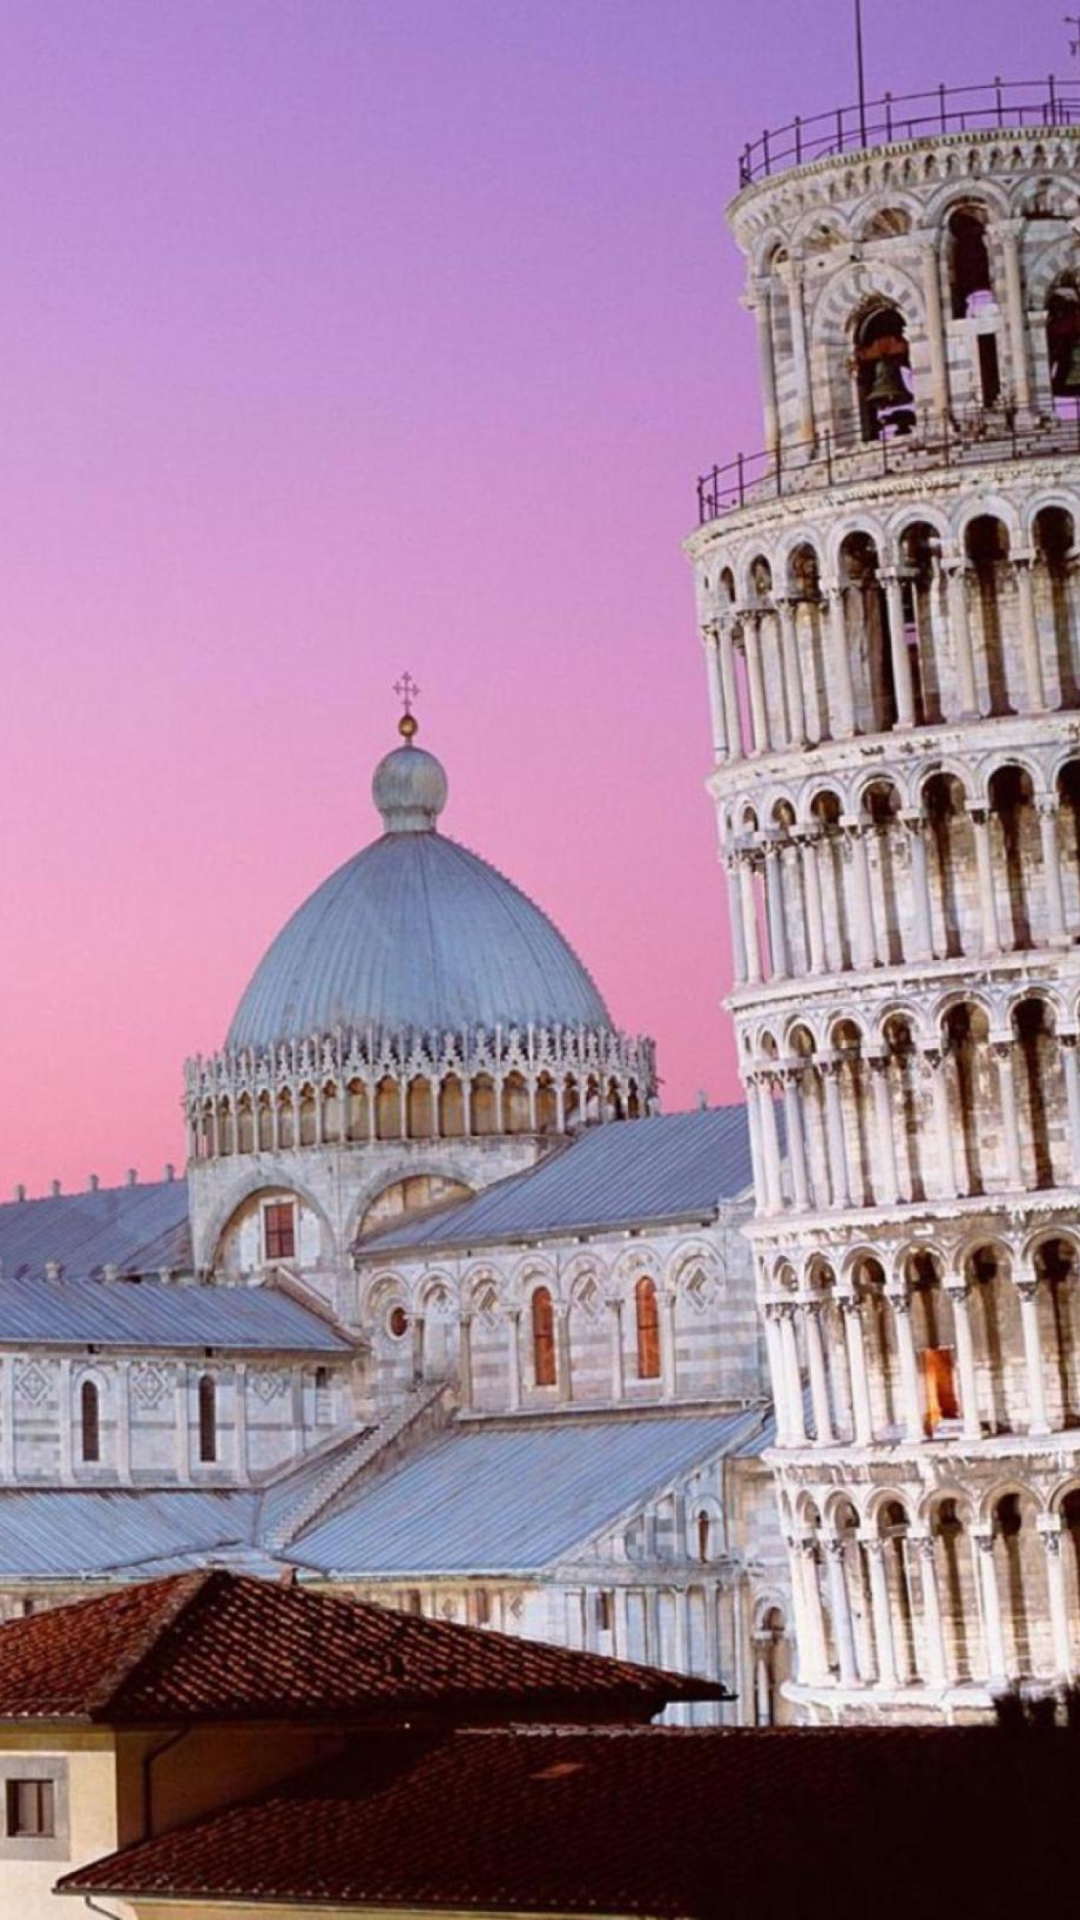 Tower of Pisa Italy screenshot #1 1080x1920